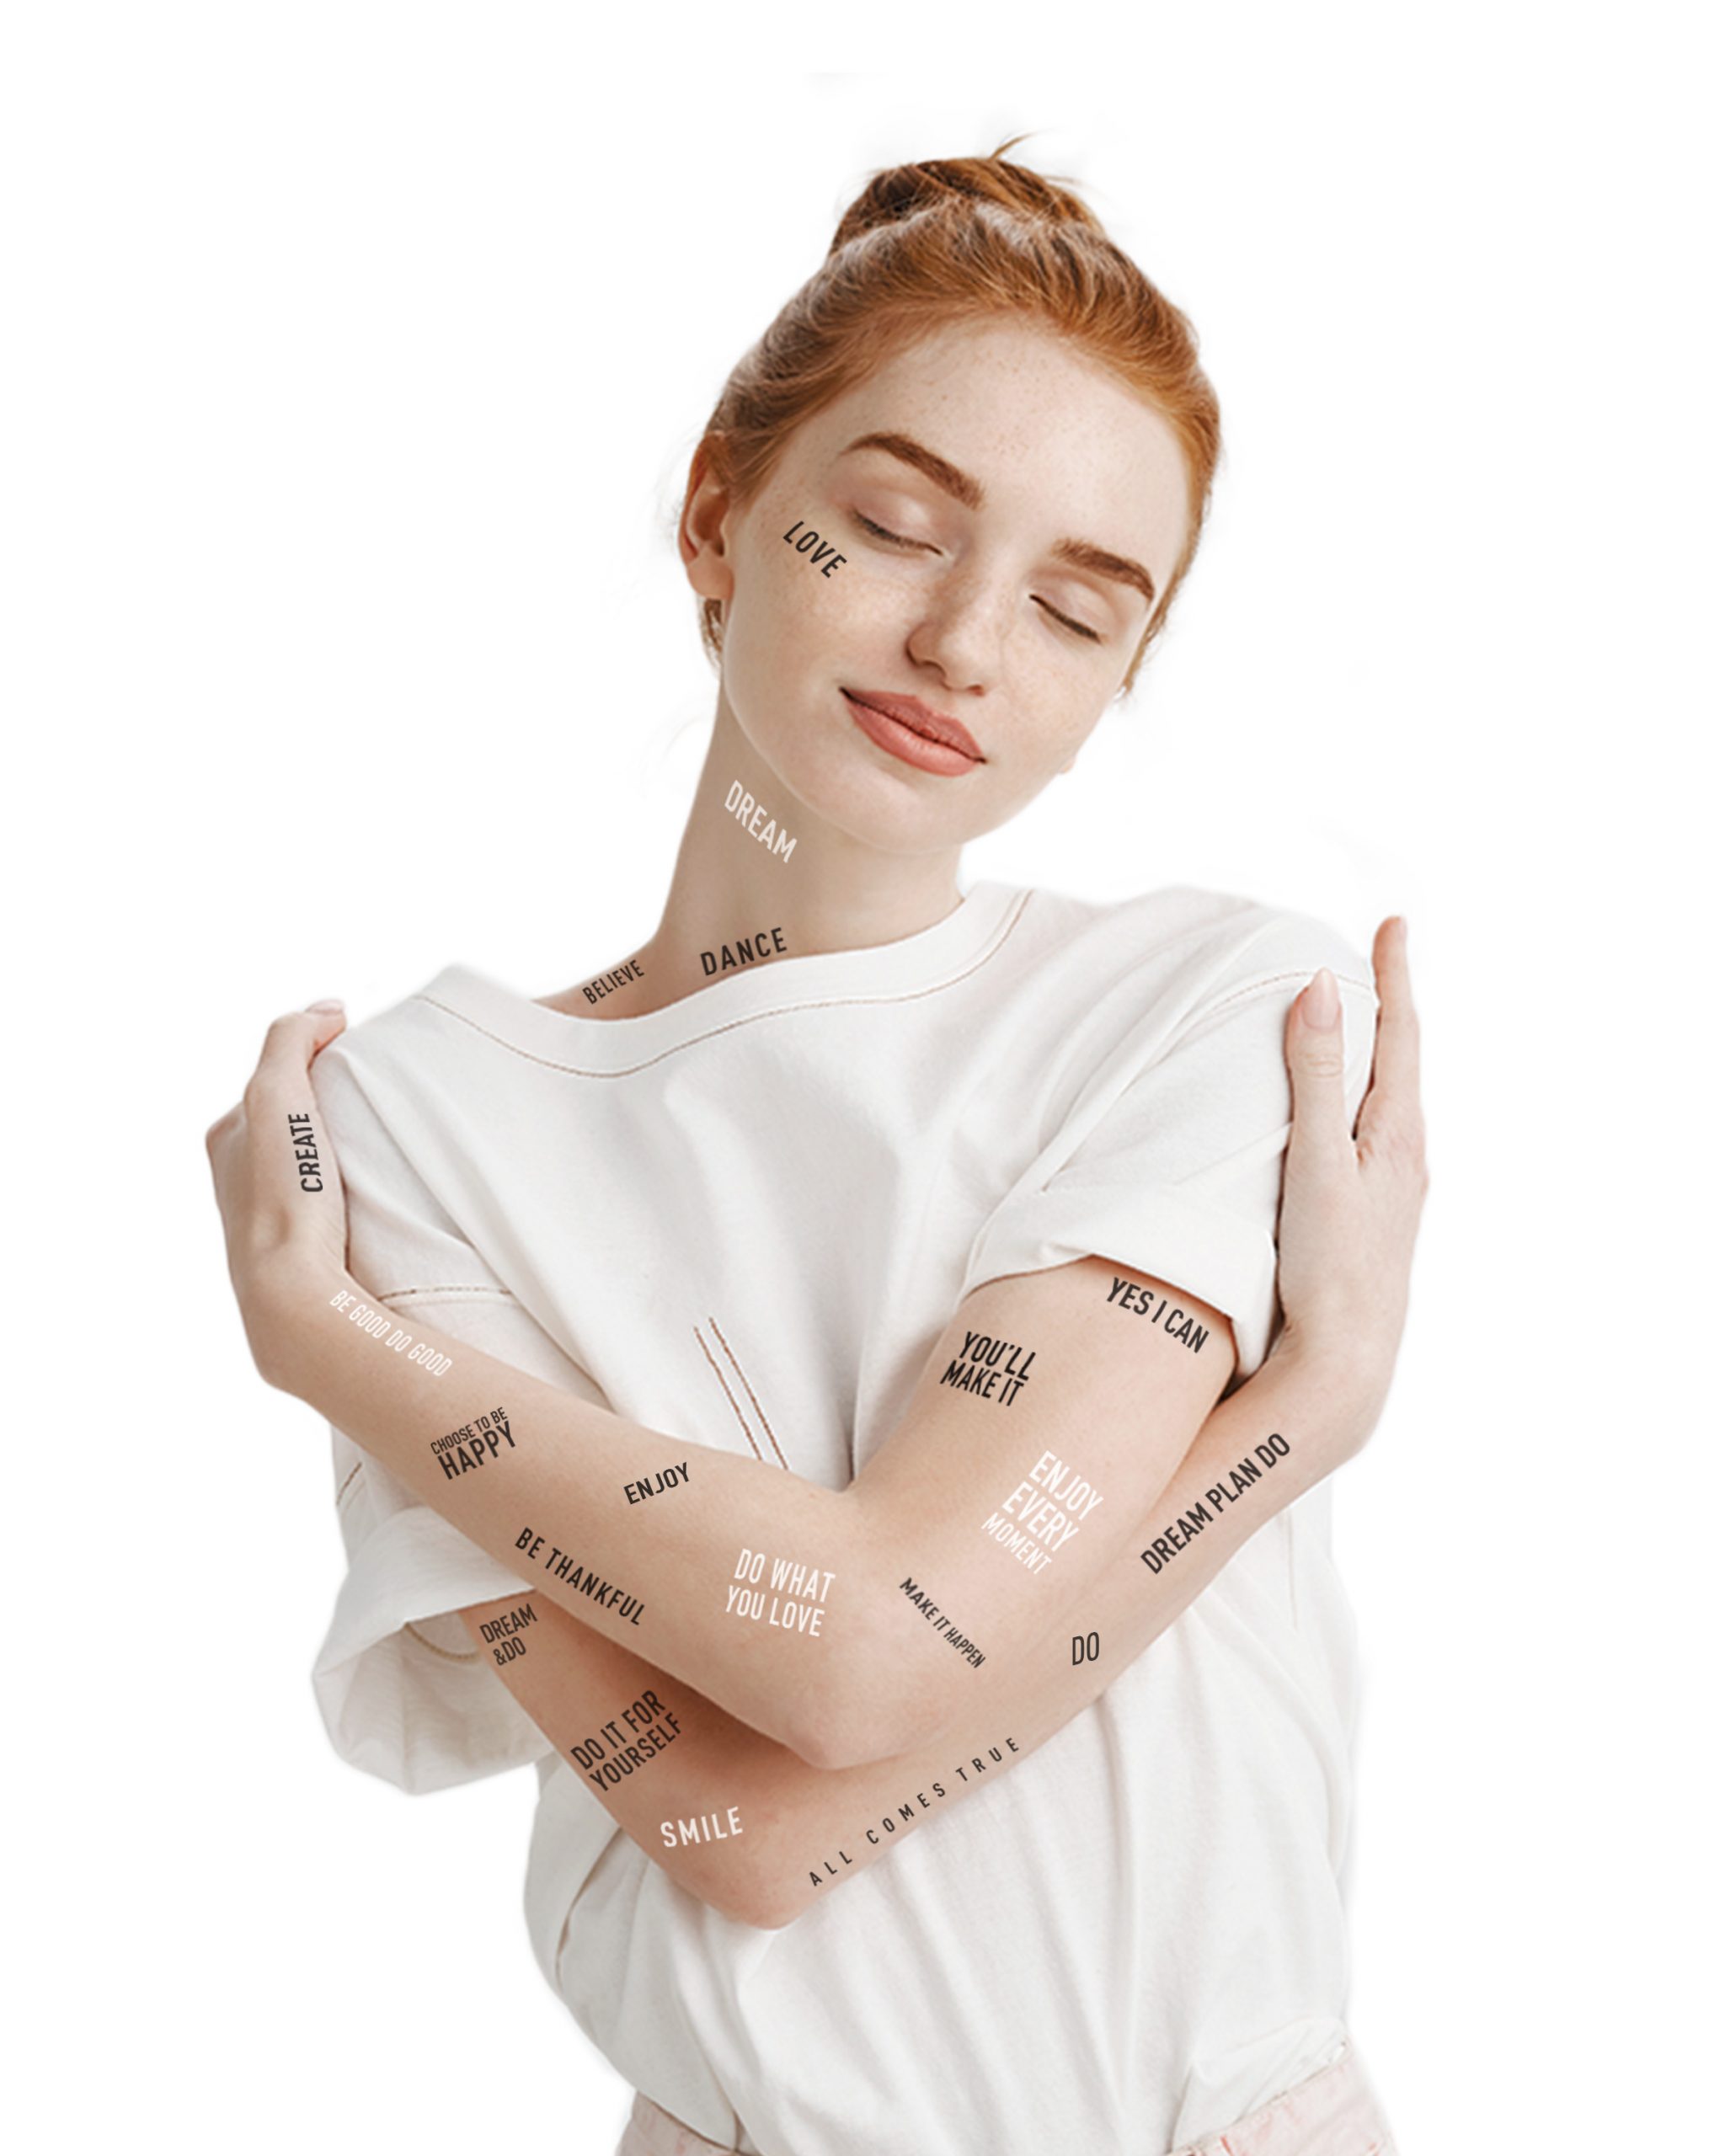 Inspiring phrases temporary tattoos Dream&Do Tattoo